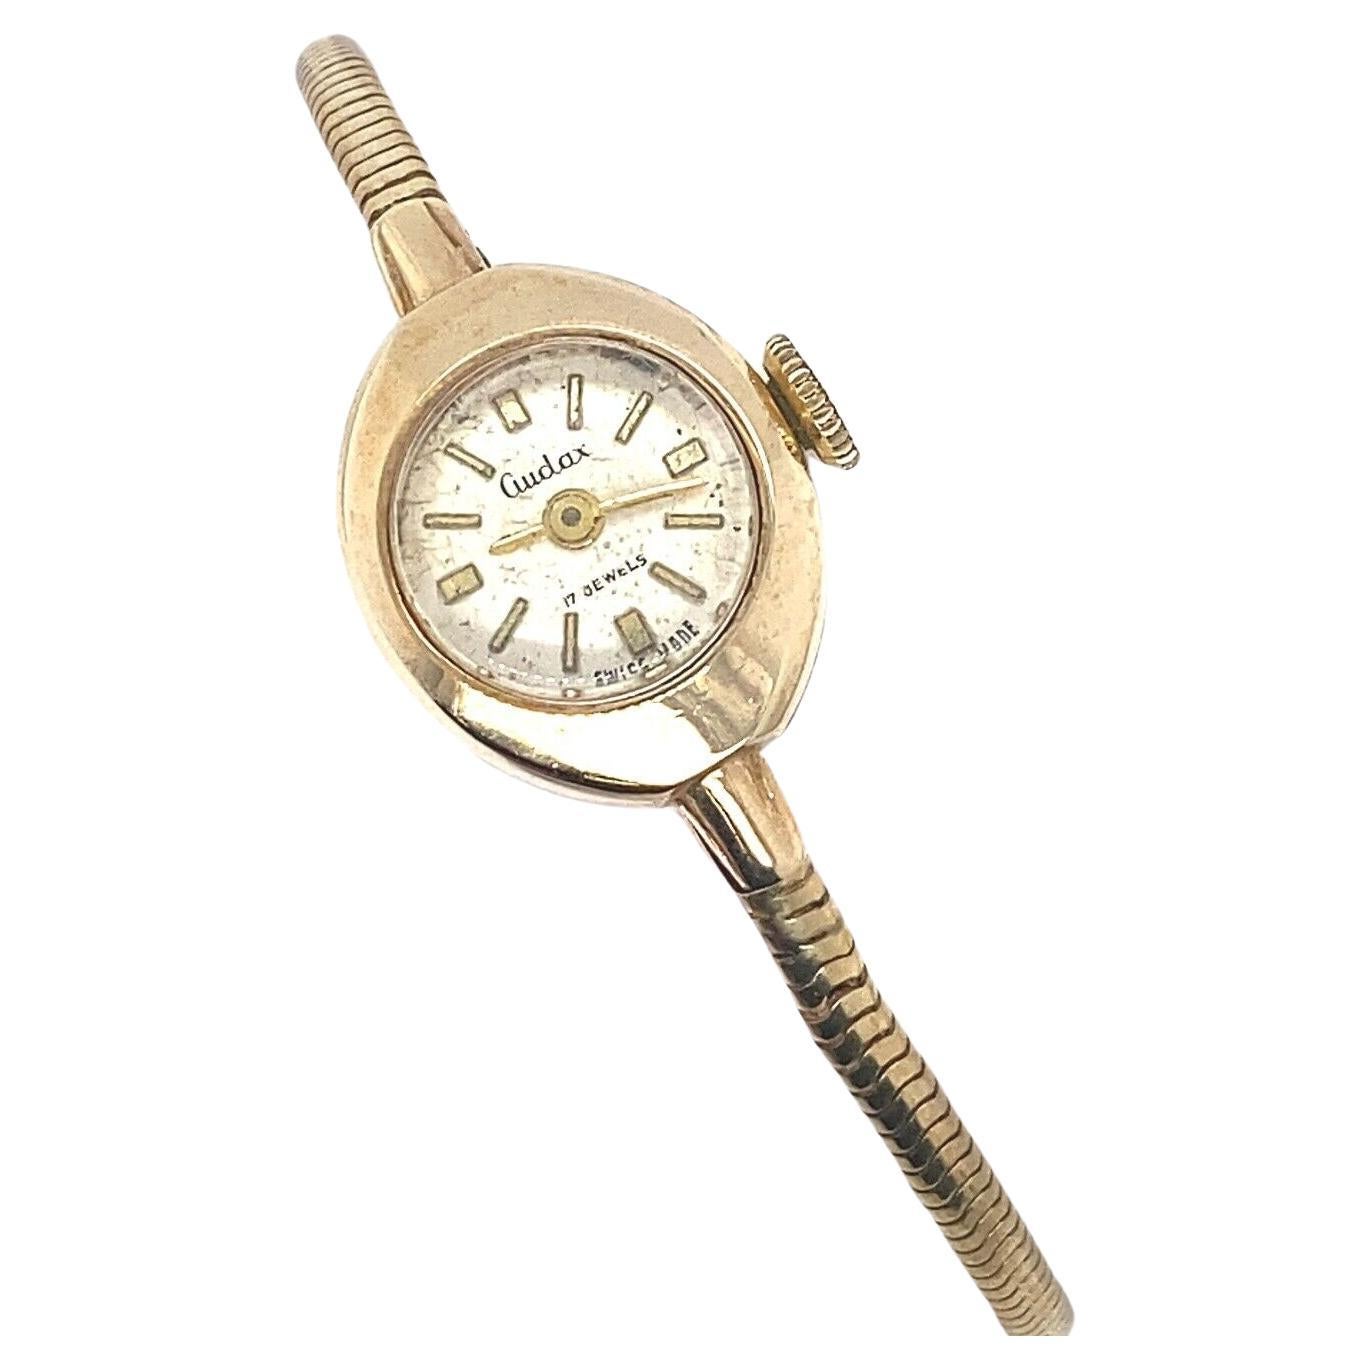 Vintage Audax-Uhr-Armbanduhr mit cremefarbenem Zifferblatt aus 9 Karat Gold